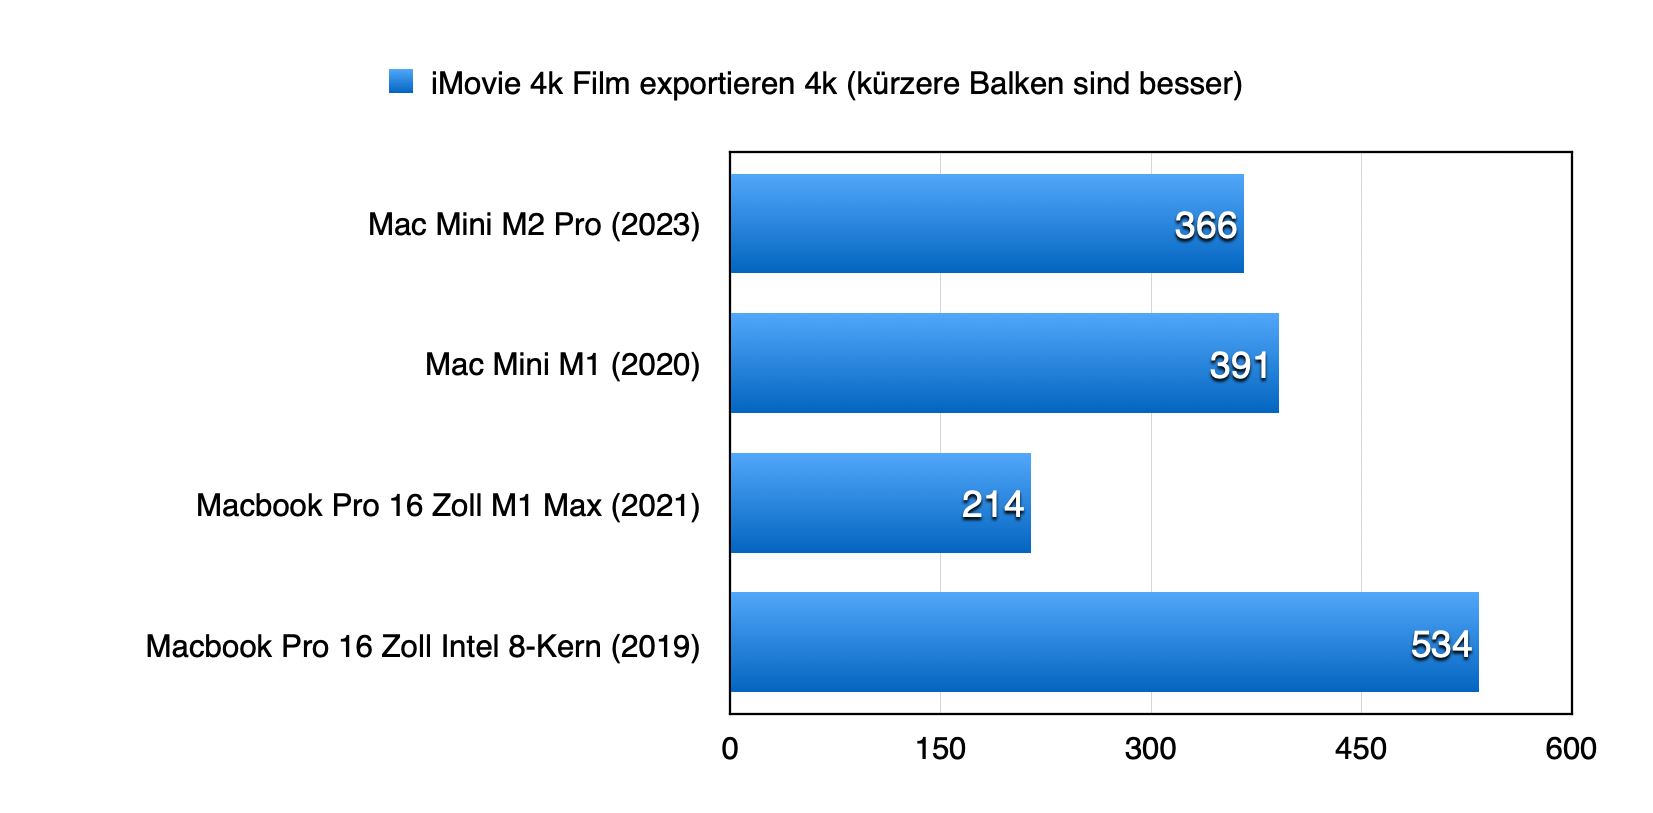 iMovie 4K Film exportieren in 4K